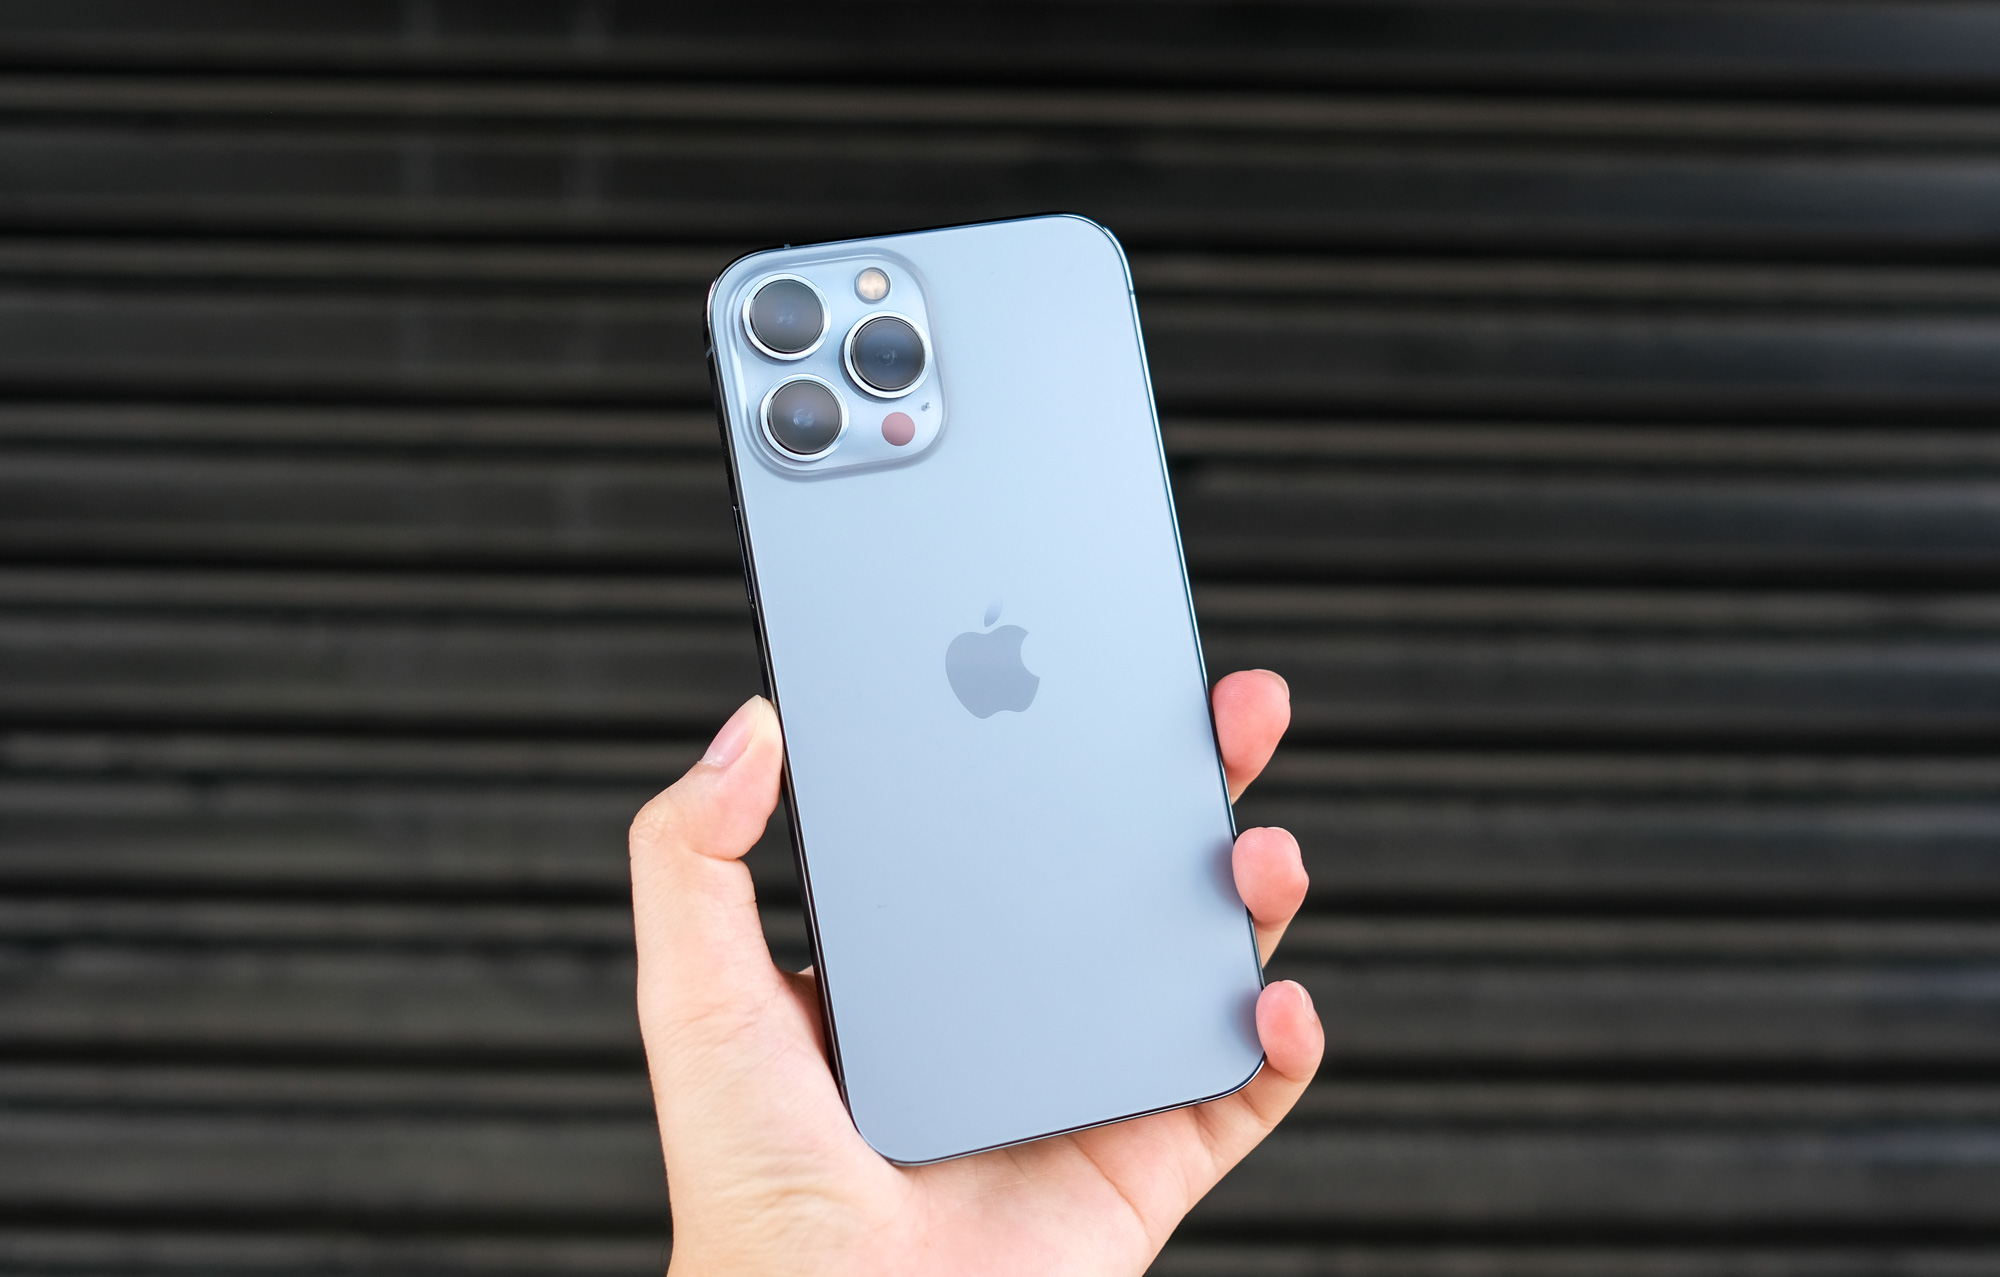 iPhone 13 Pro Max: Bạn có muốn sở hữu một chiếc điện thoại thông minh với kiểu dáng đẹp mắt và tính năng cực kỳ tiên tiến? Hãy xem hình ảnh iPhone 13 Pro Max để khám phá màn hình siêu lớn, camera chuyên nghiệp và hiệu năng vượt trội của sản phẩm này.